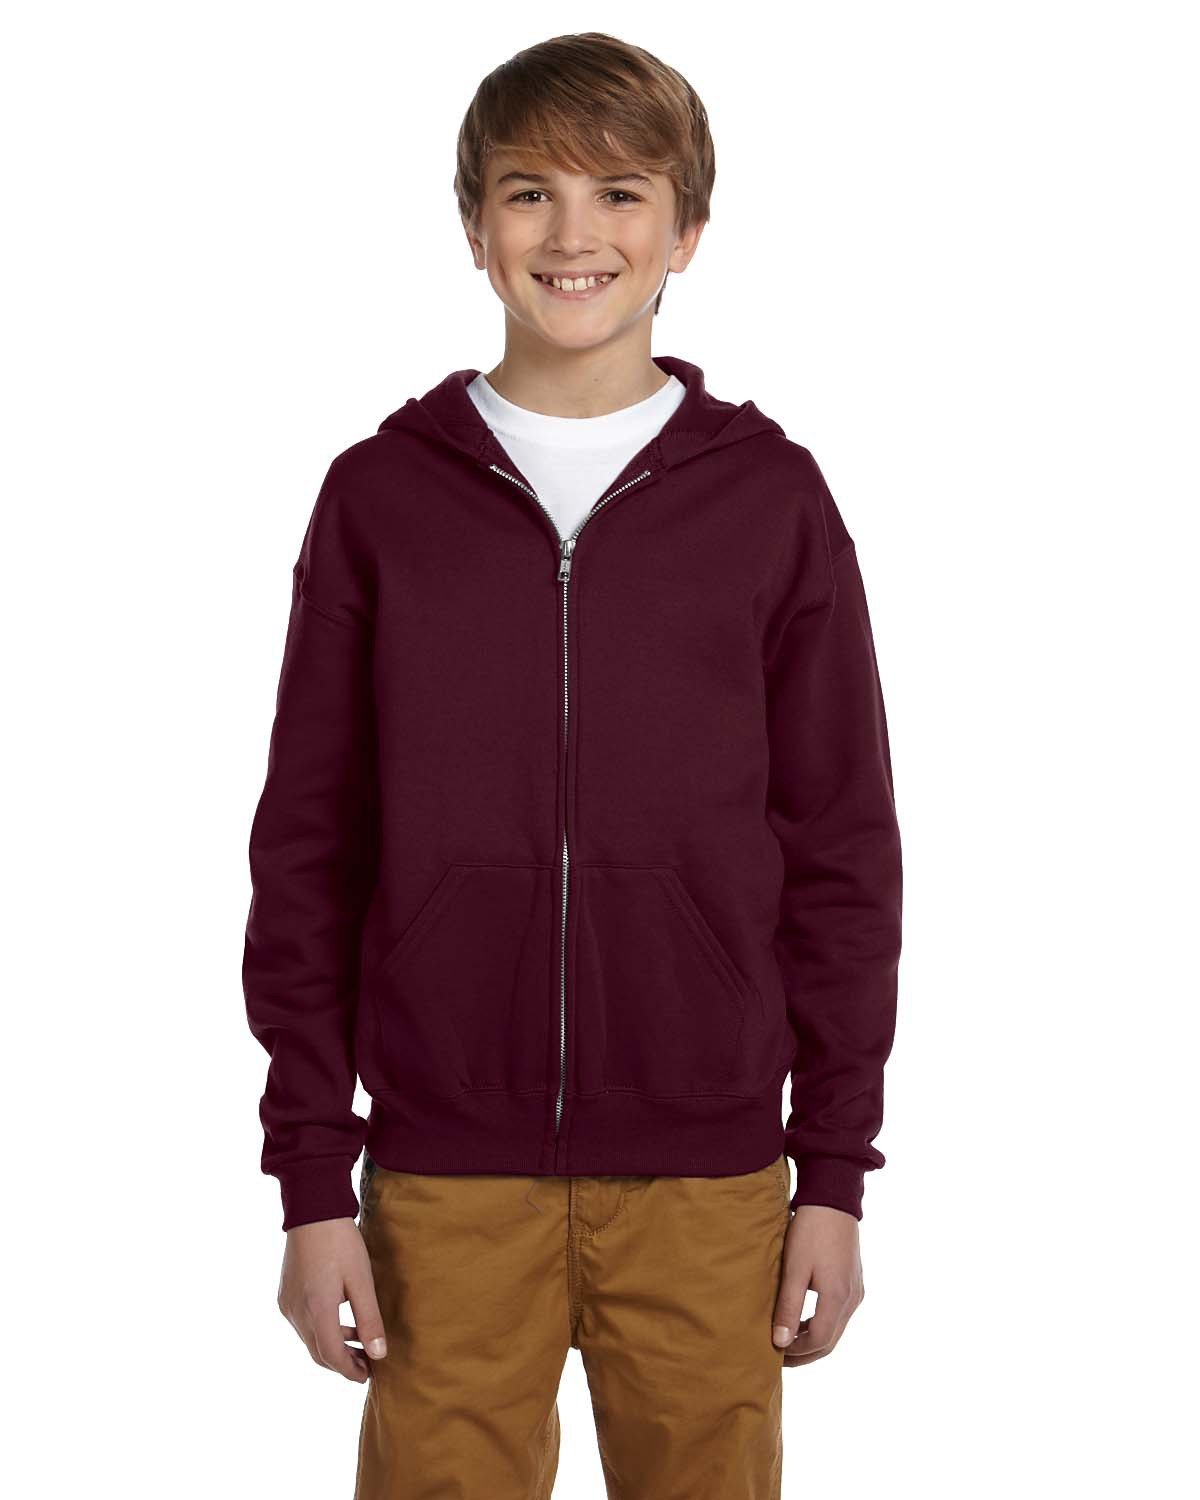 A009 993B Youth NuBlend Fleece Full-Zip Hooded Sweatshirt